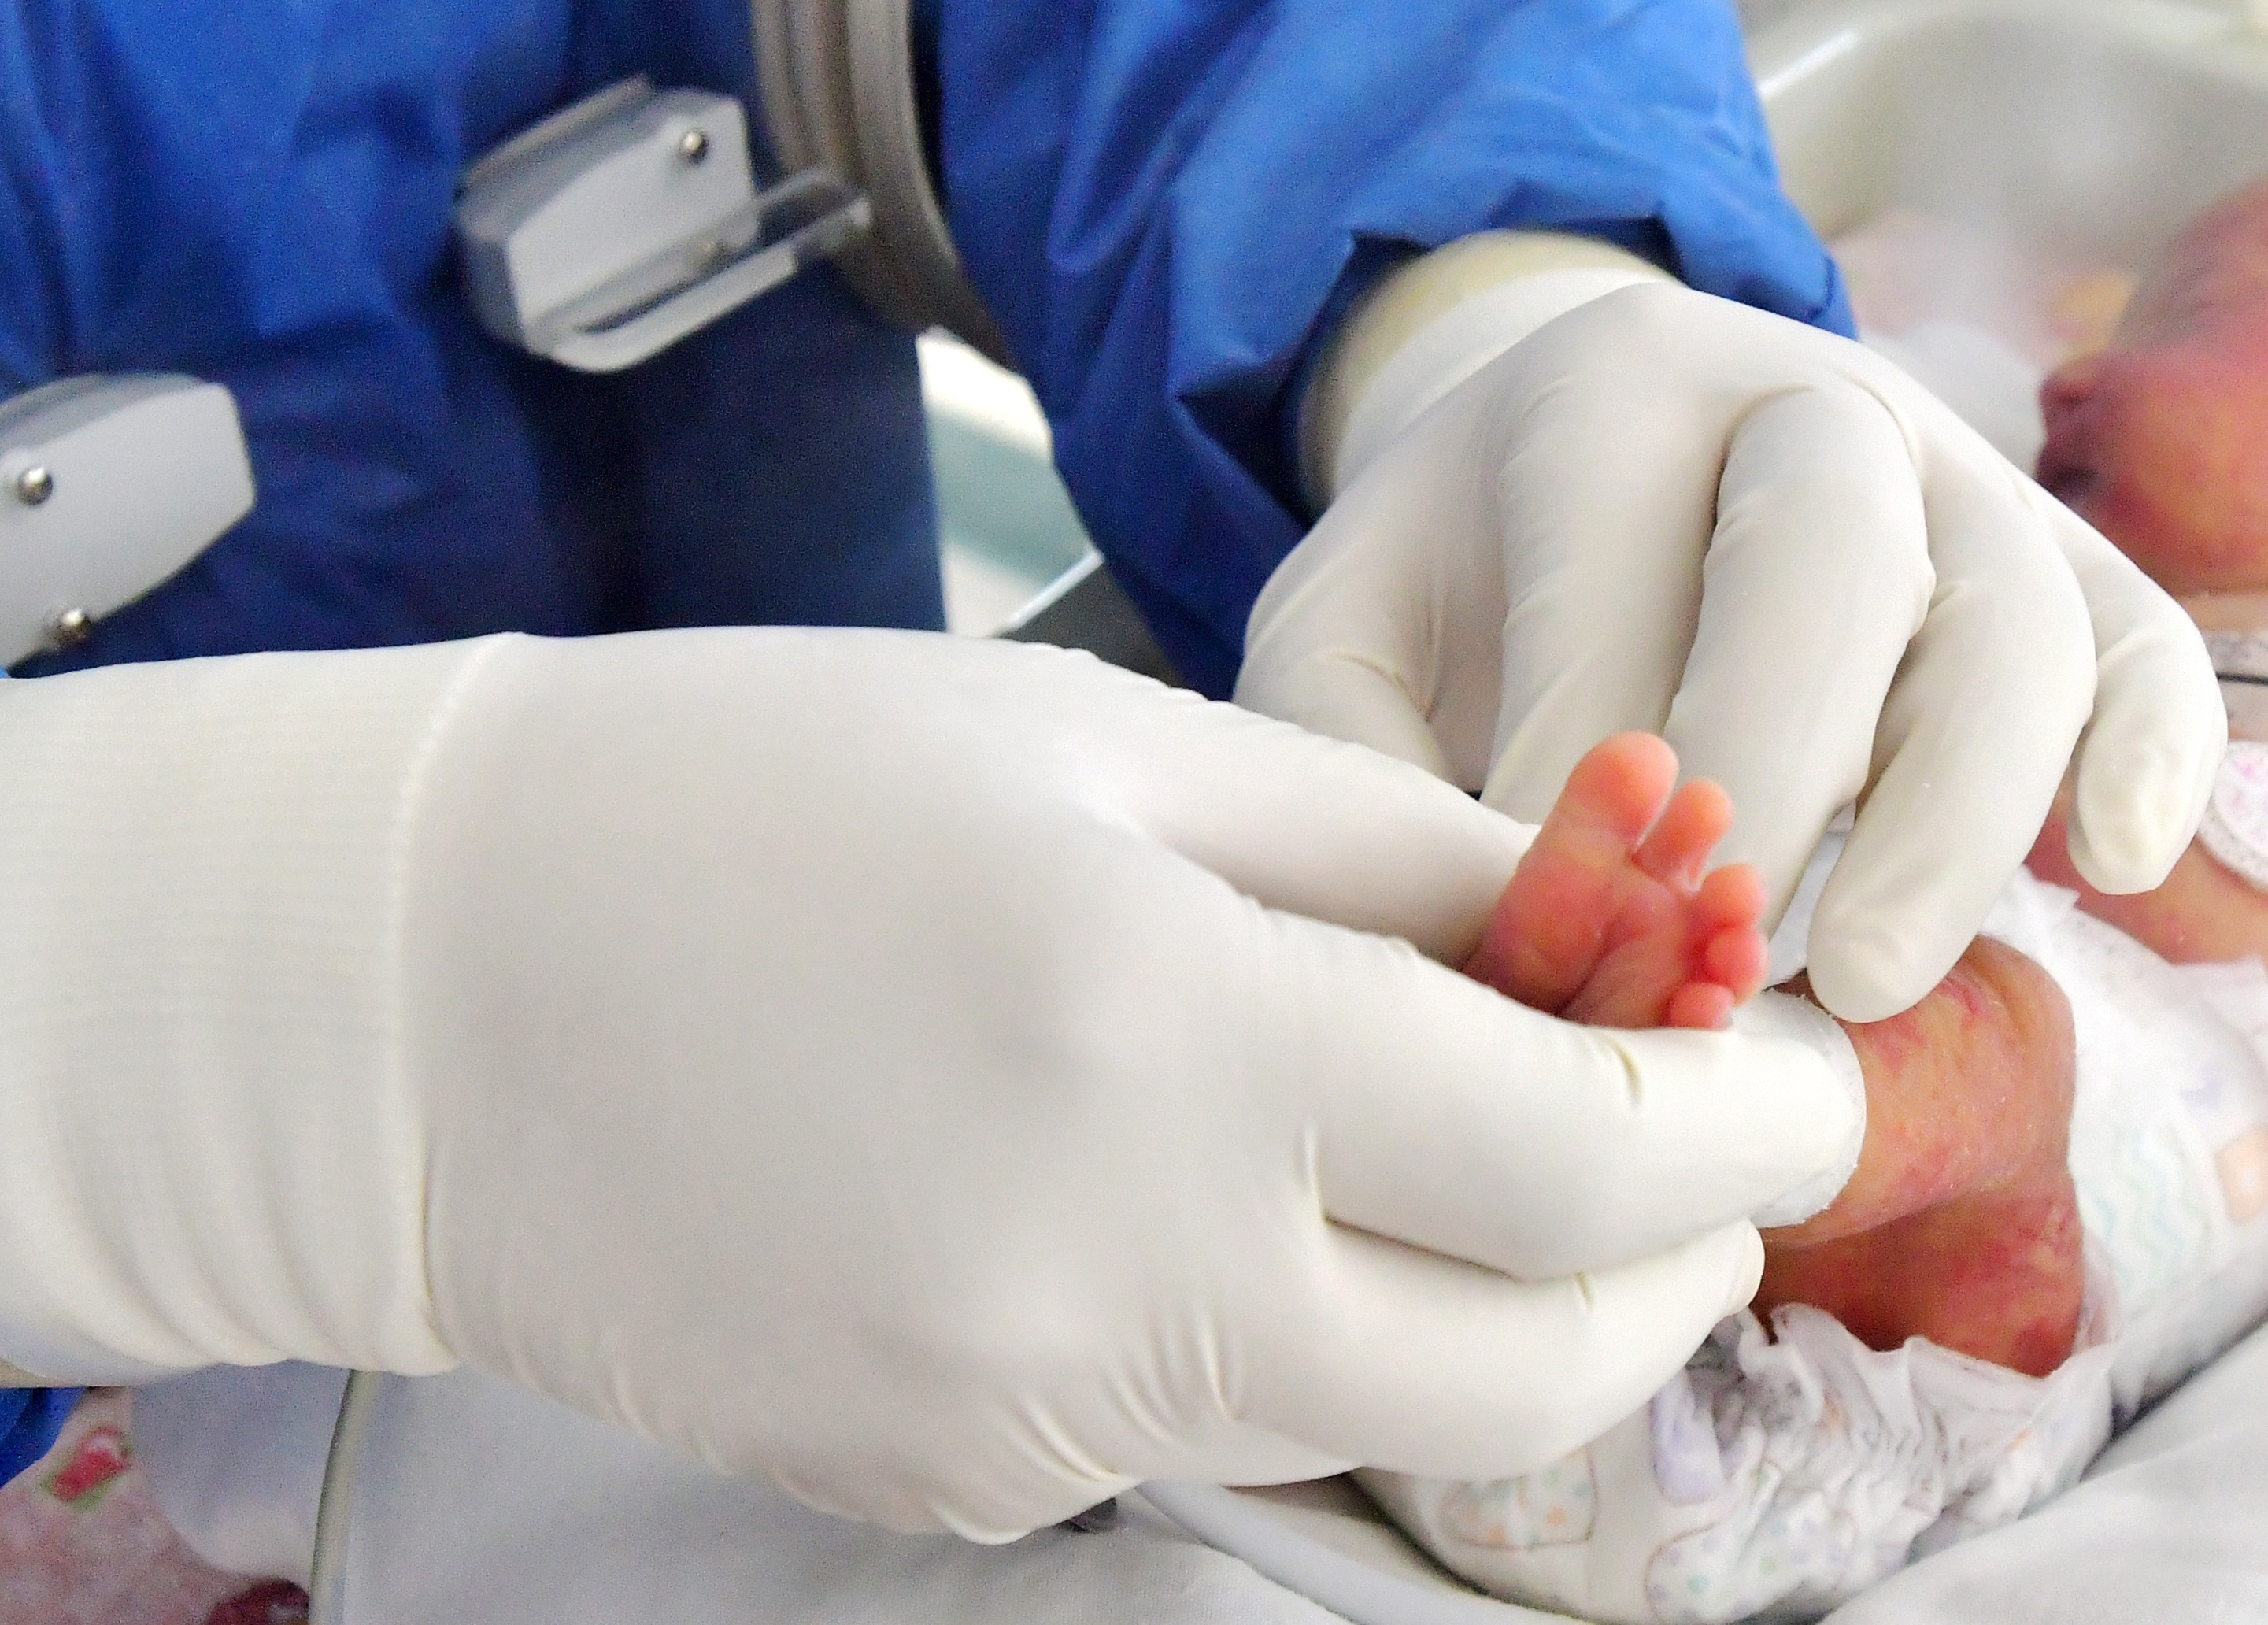 Vientres Subrogados: Vida Asistida por la Ciencia Parte I: Santiago: El primer nacimiento con células madre